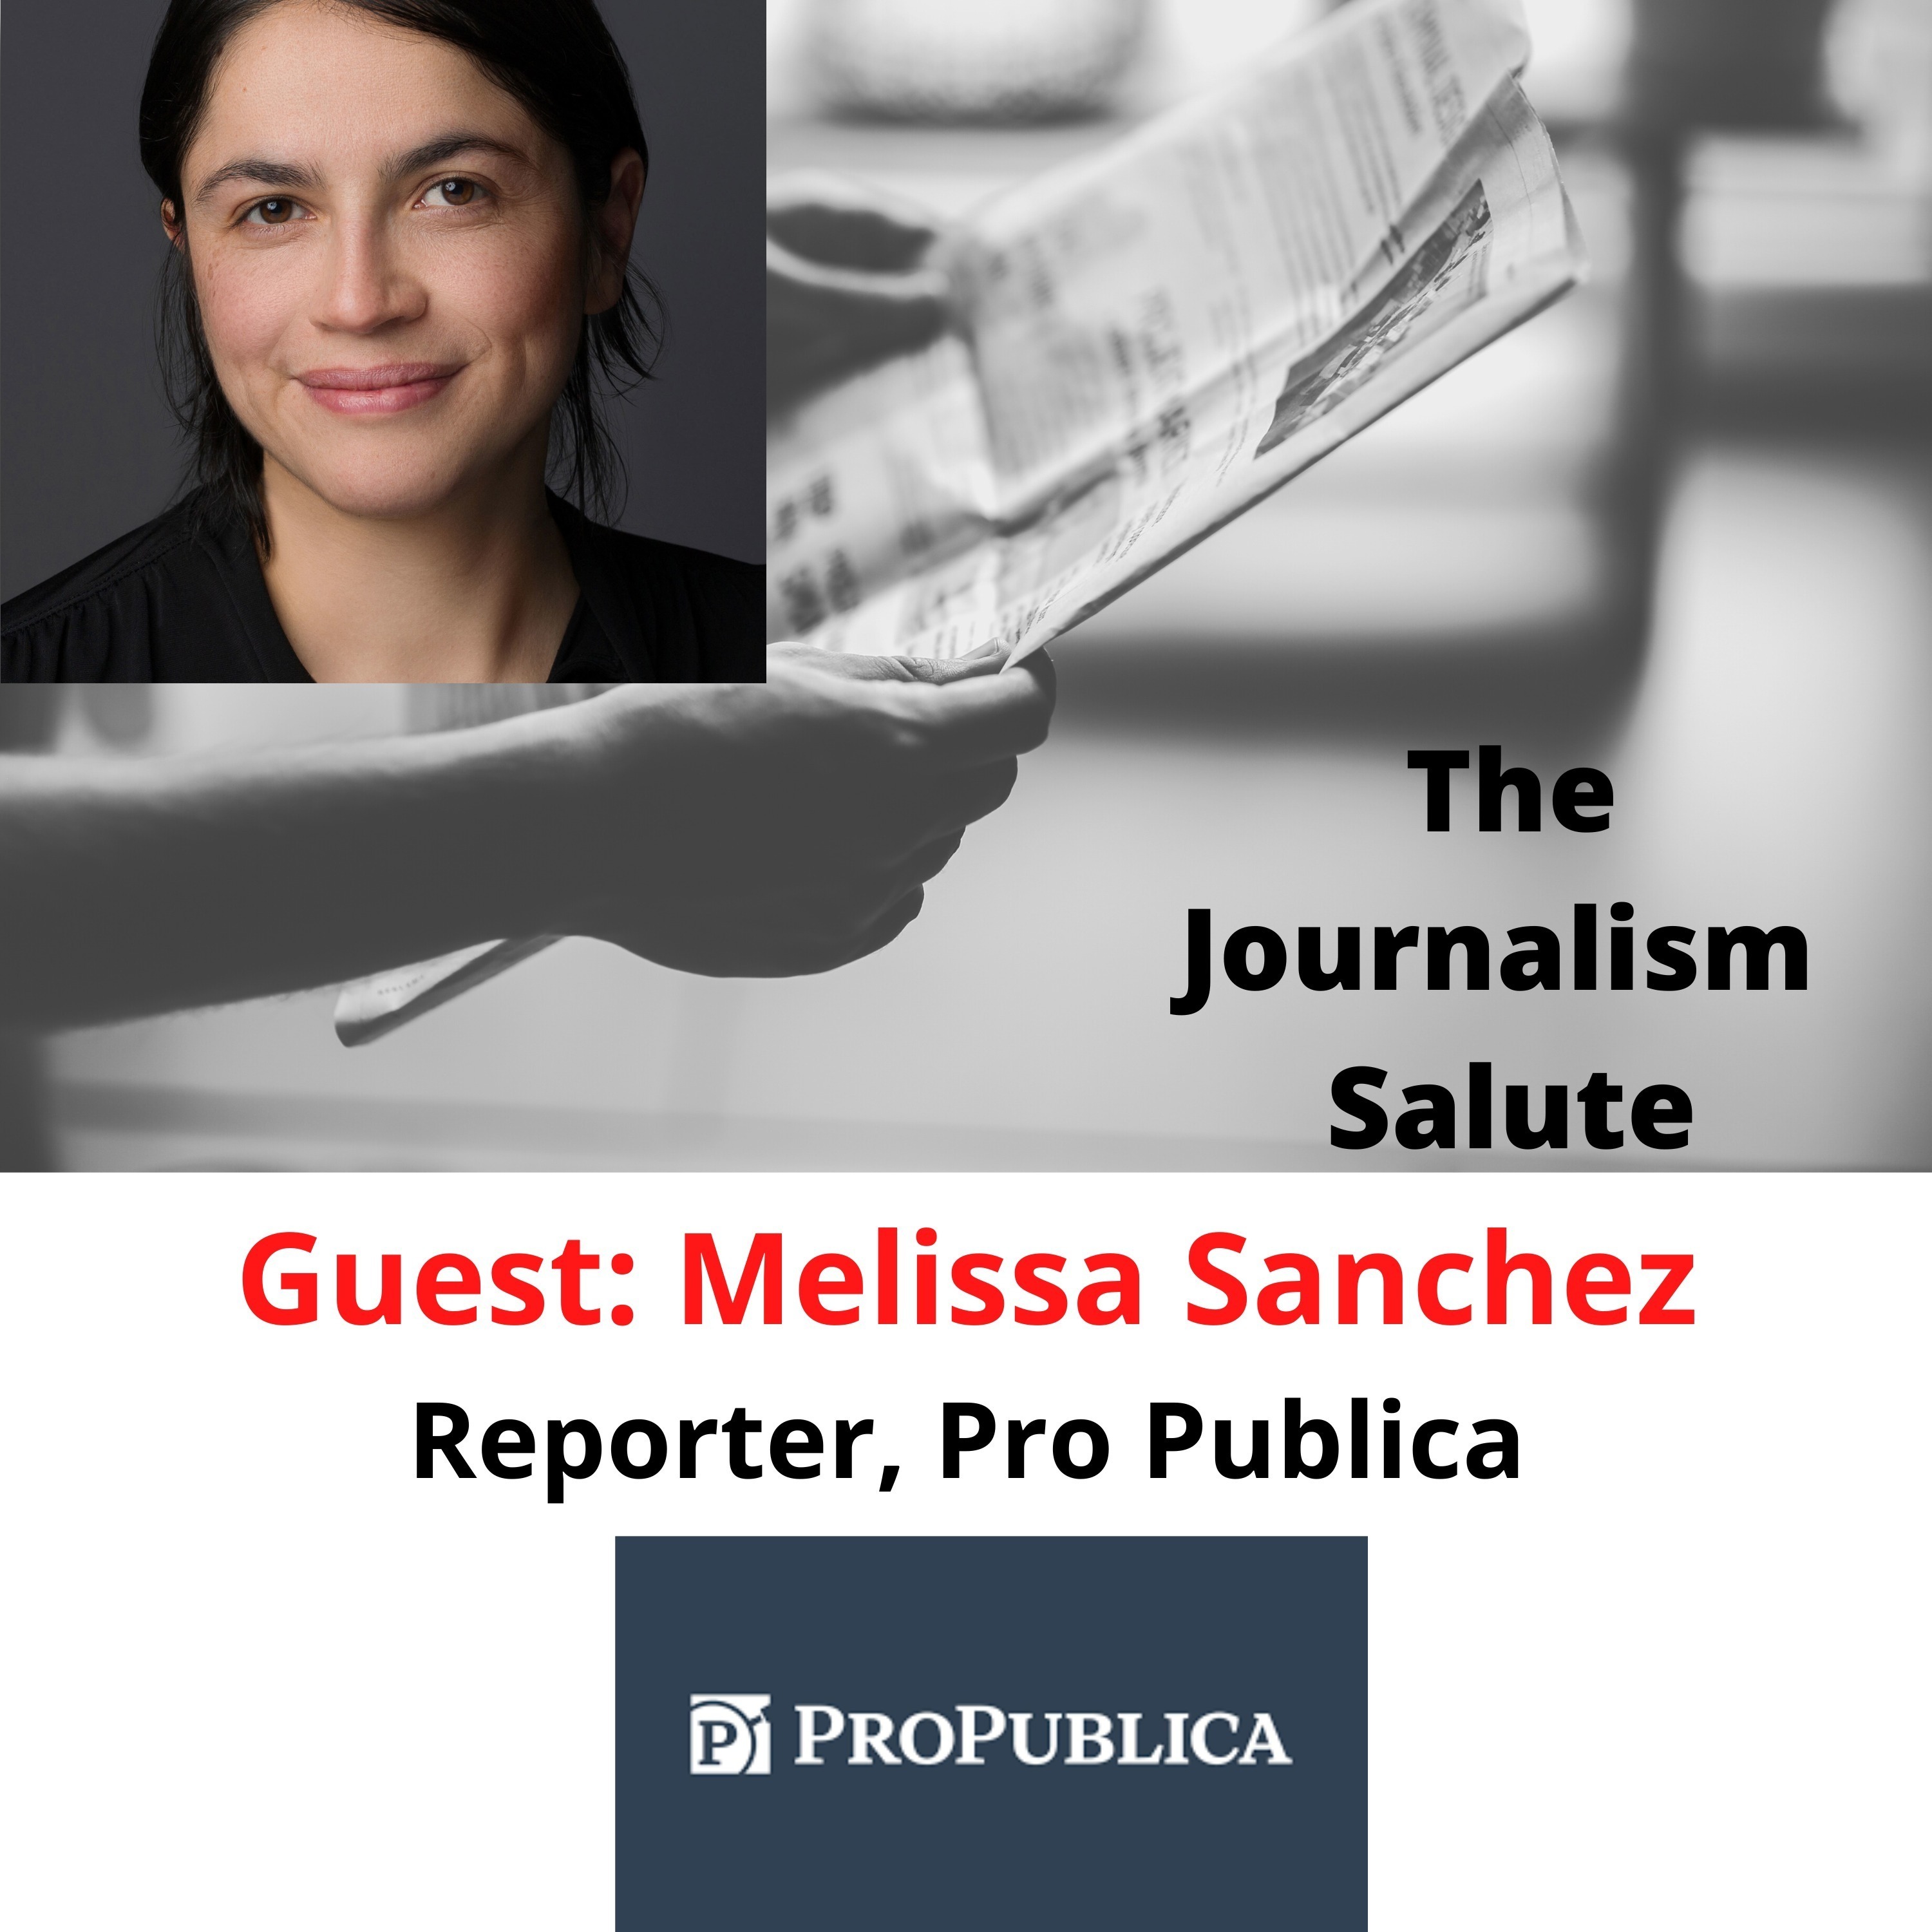 Melissa Sanchez, Pro Publica